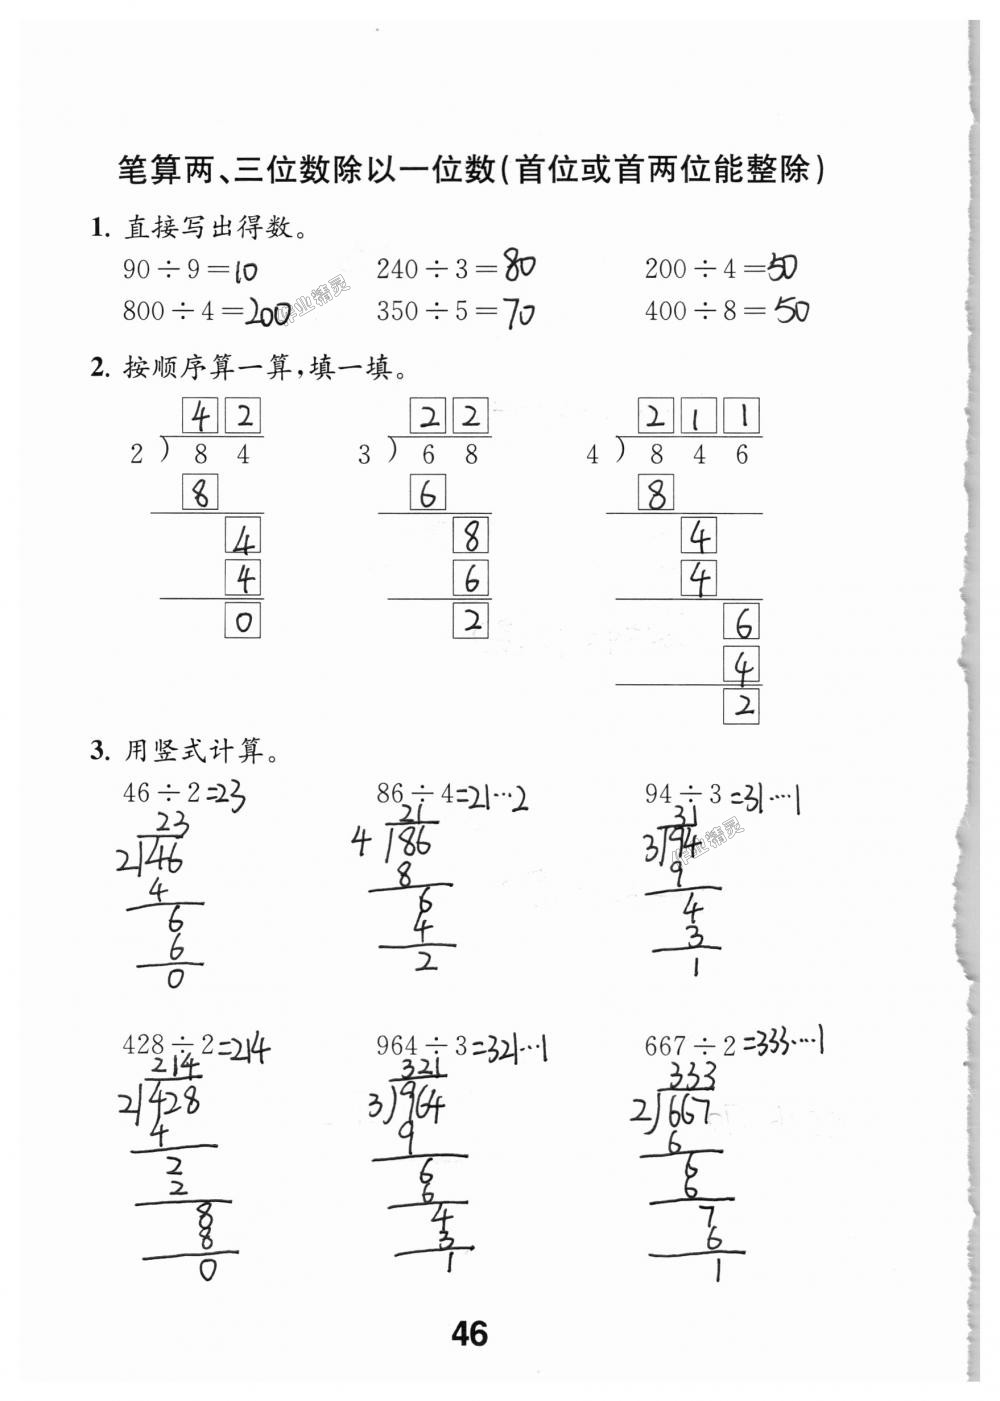 2018年数学补充习题三年级上册苏教版江苏凤凰教育出版社 第46页